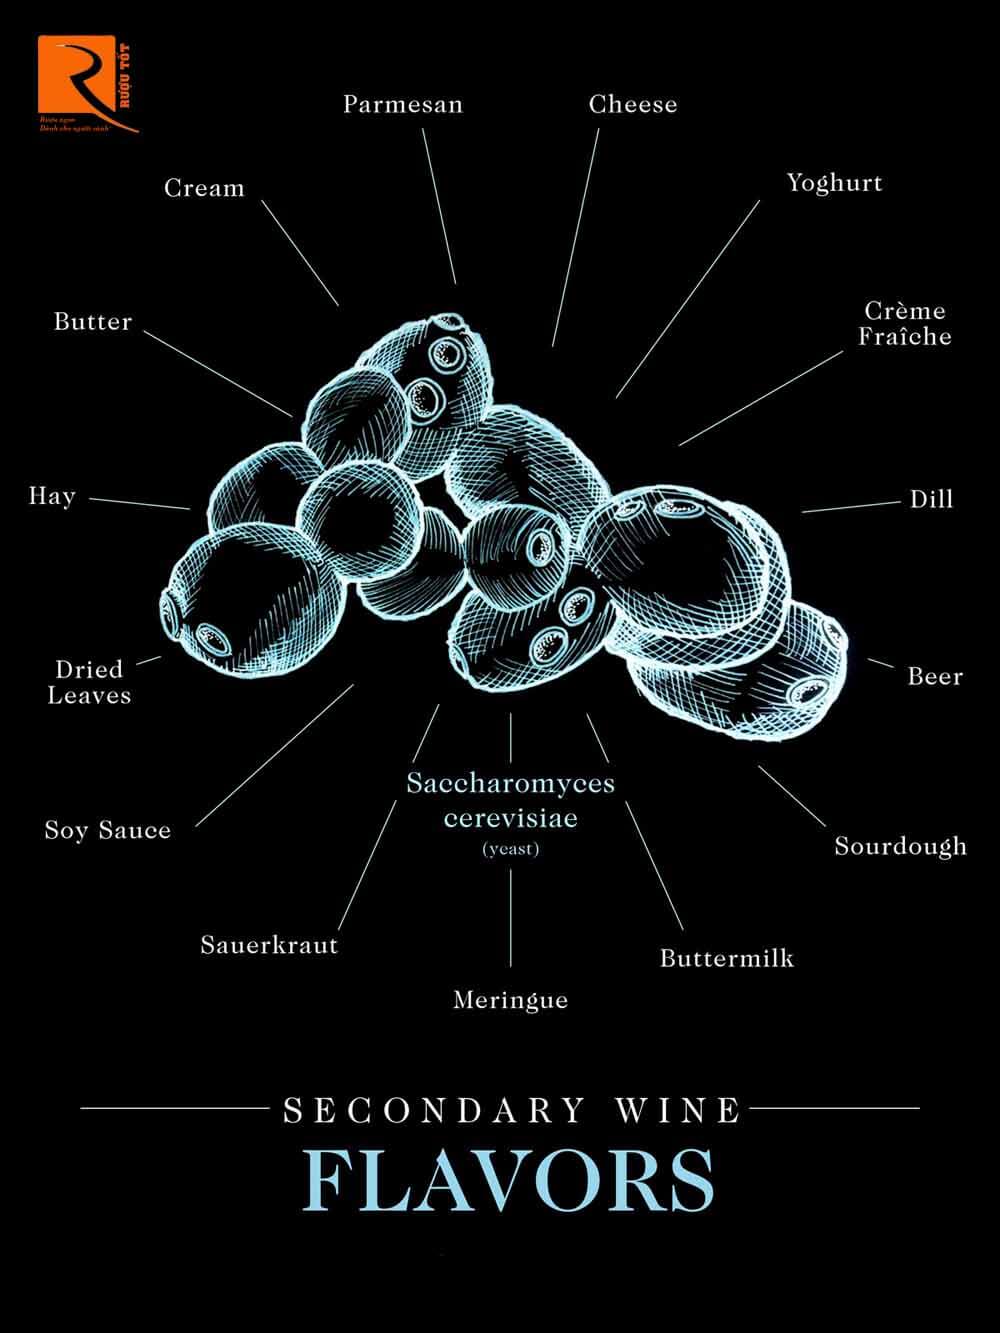 Nấm men là loại nấm đơn bào nhỏ chuyển hóa đường thành rượu trong quá trình sản xuất rượu vang.